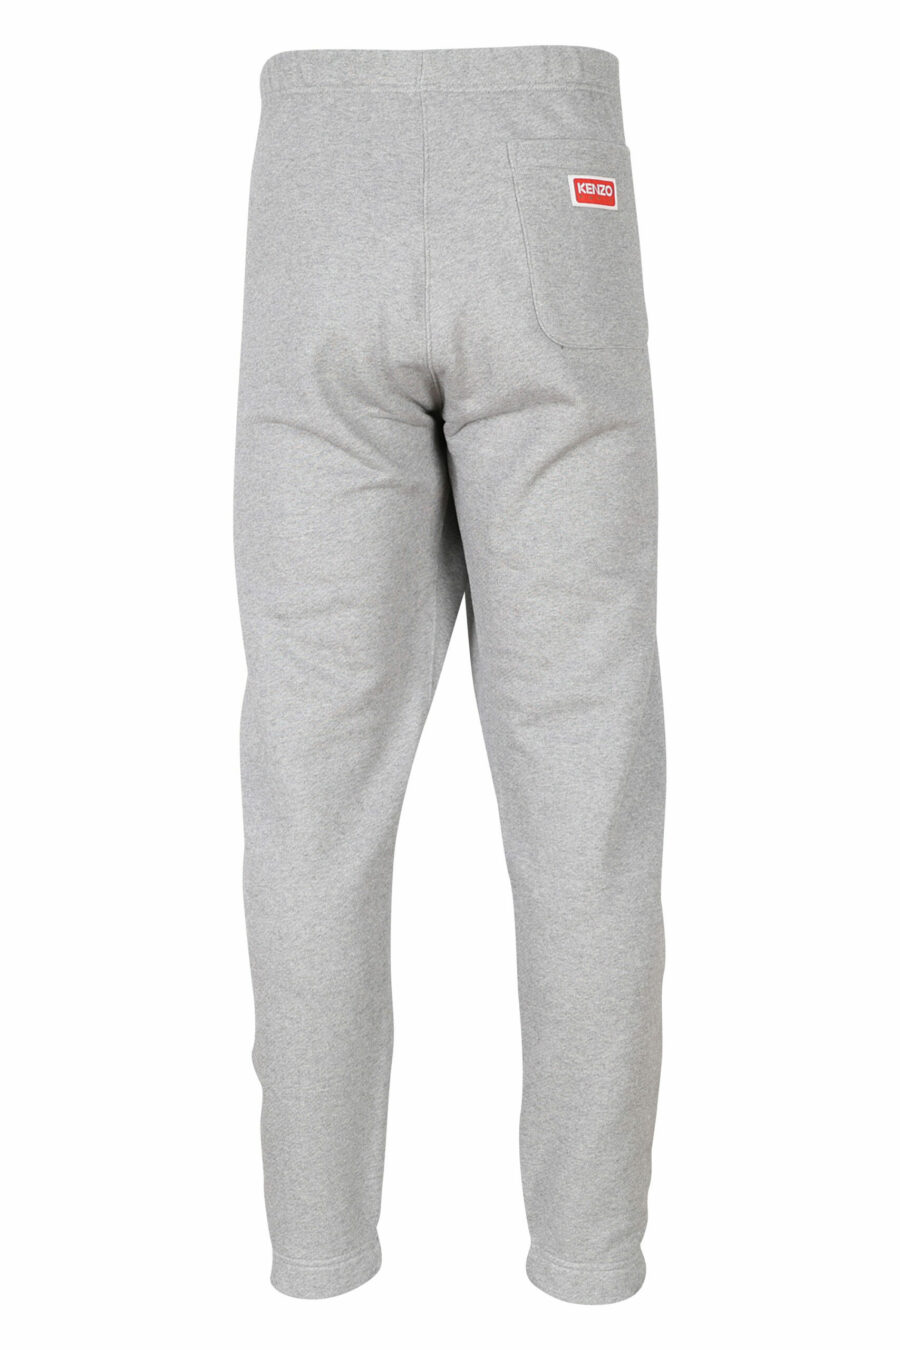 Pantalón de chándal gris con logo "kenzo academy" - 3612230531437 1 scaled